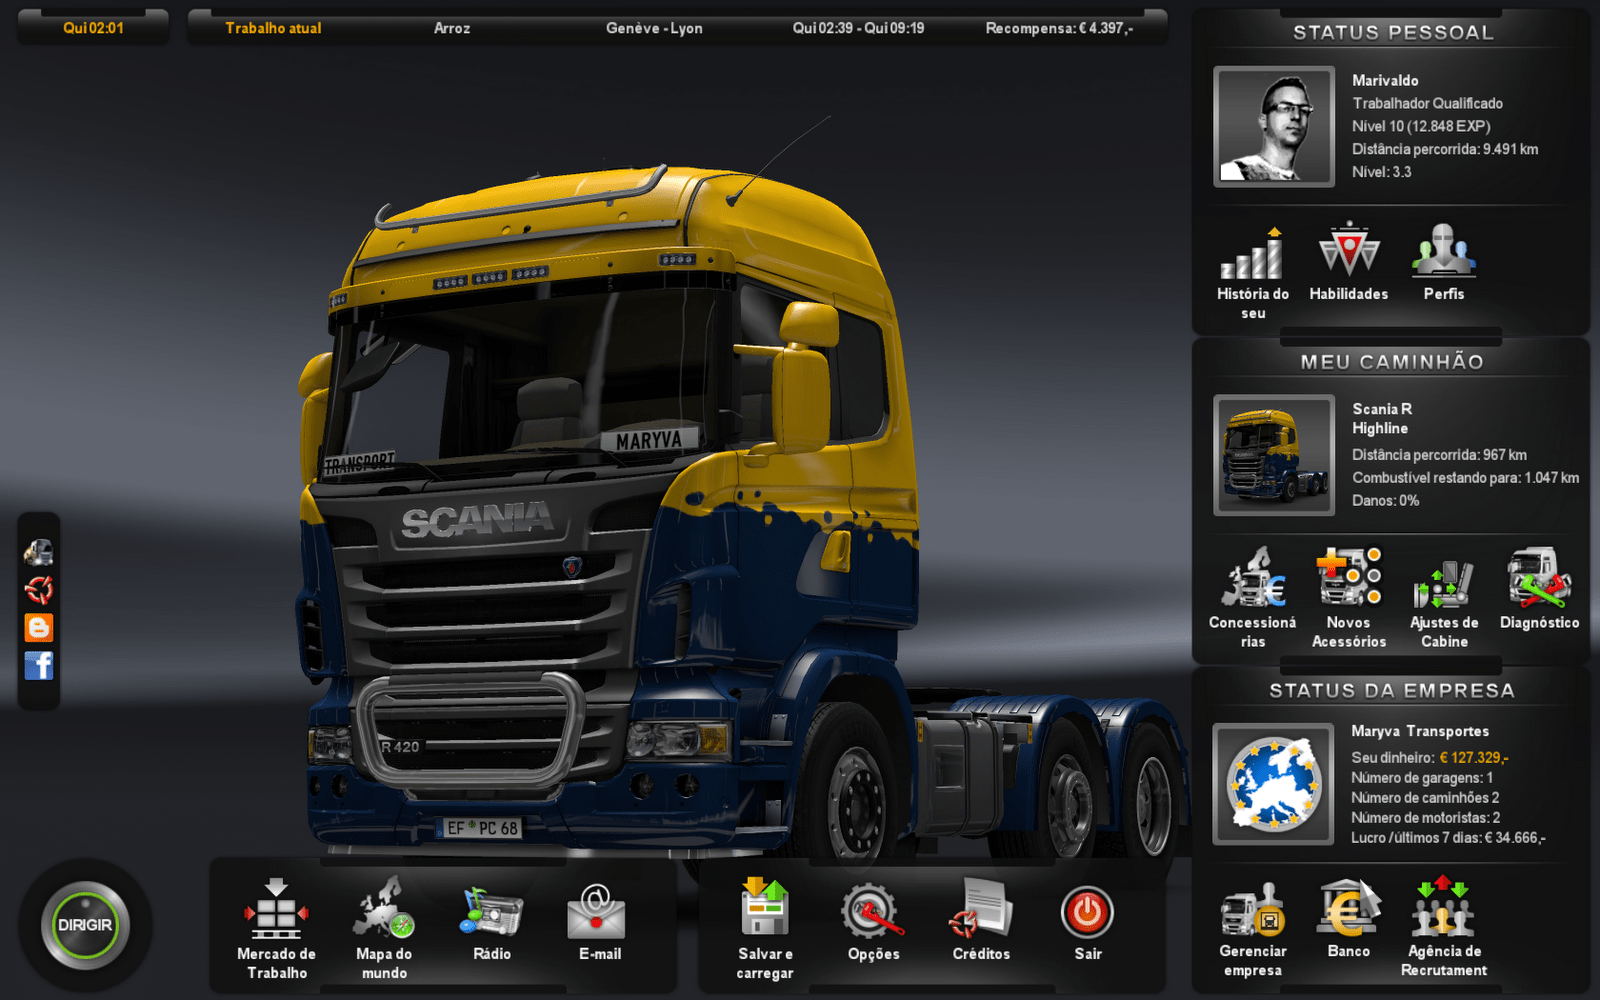 euro truck simulator 1 download